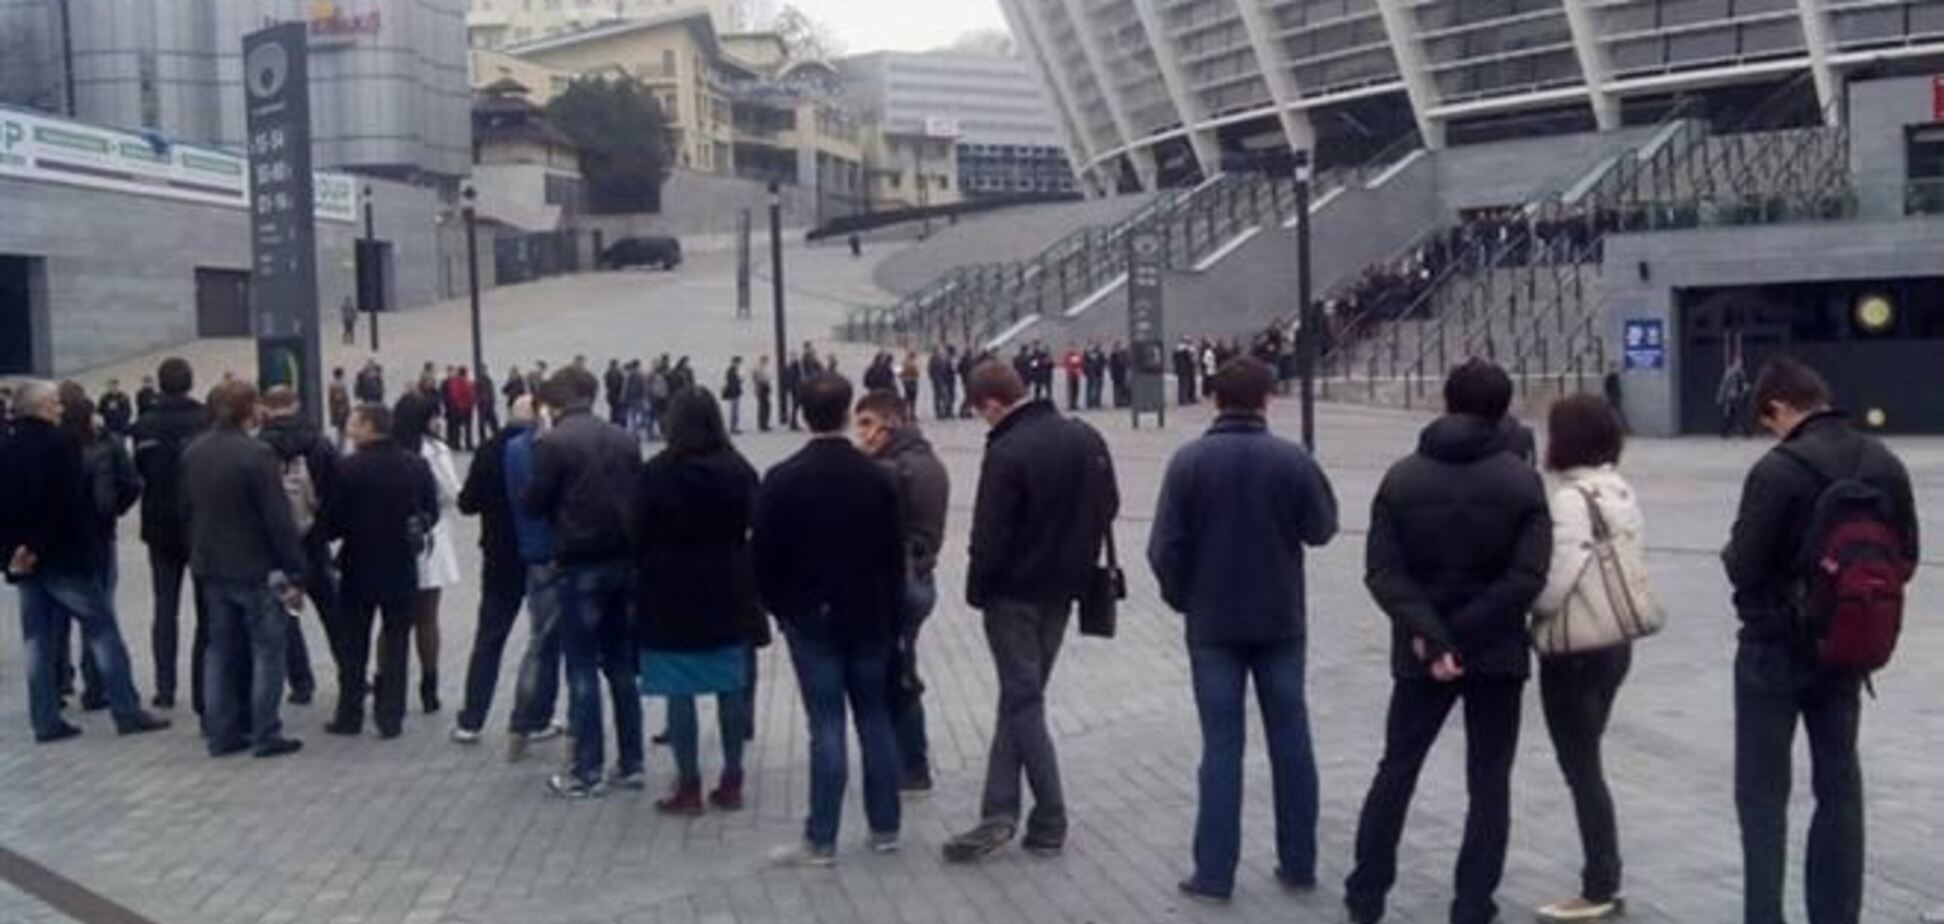 За билетами на матч Украина - Франция образовалась огромная очередь